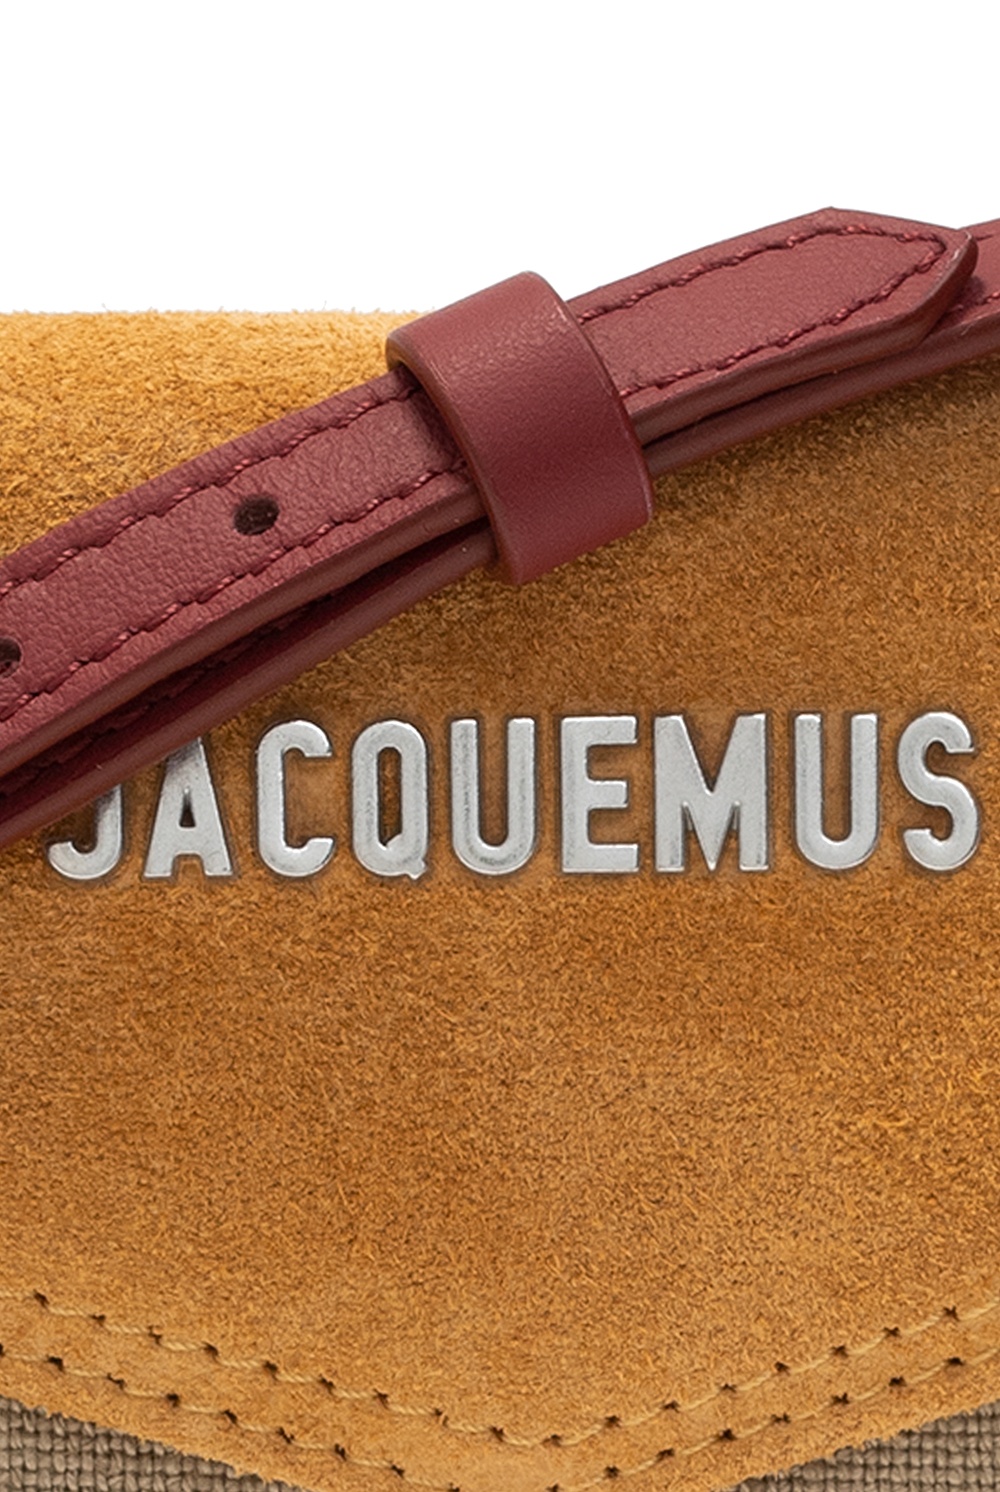 Jacquemus Le Porte Azur Unisex Light Blue in Leather - Size: Uni